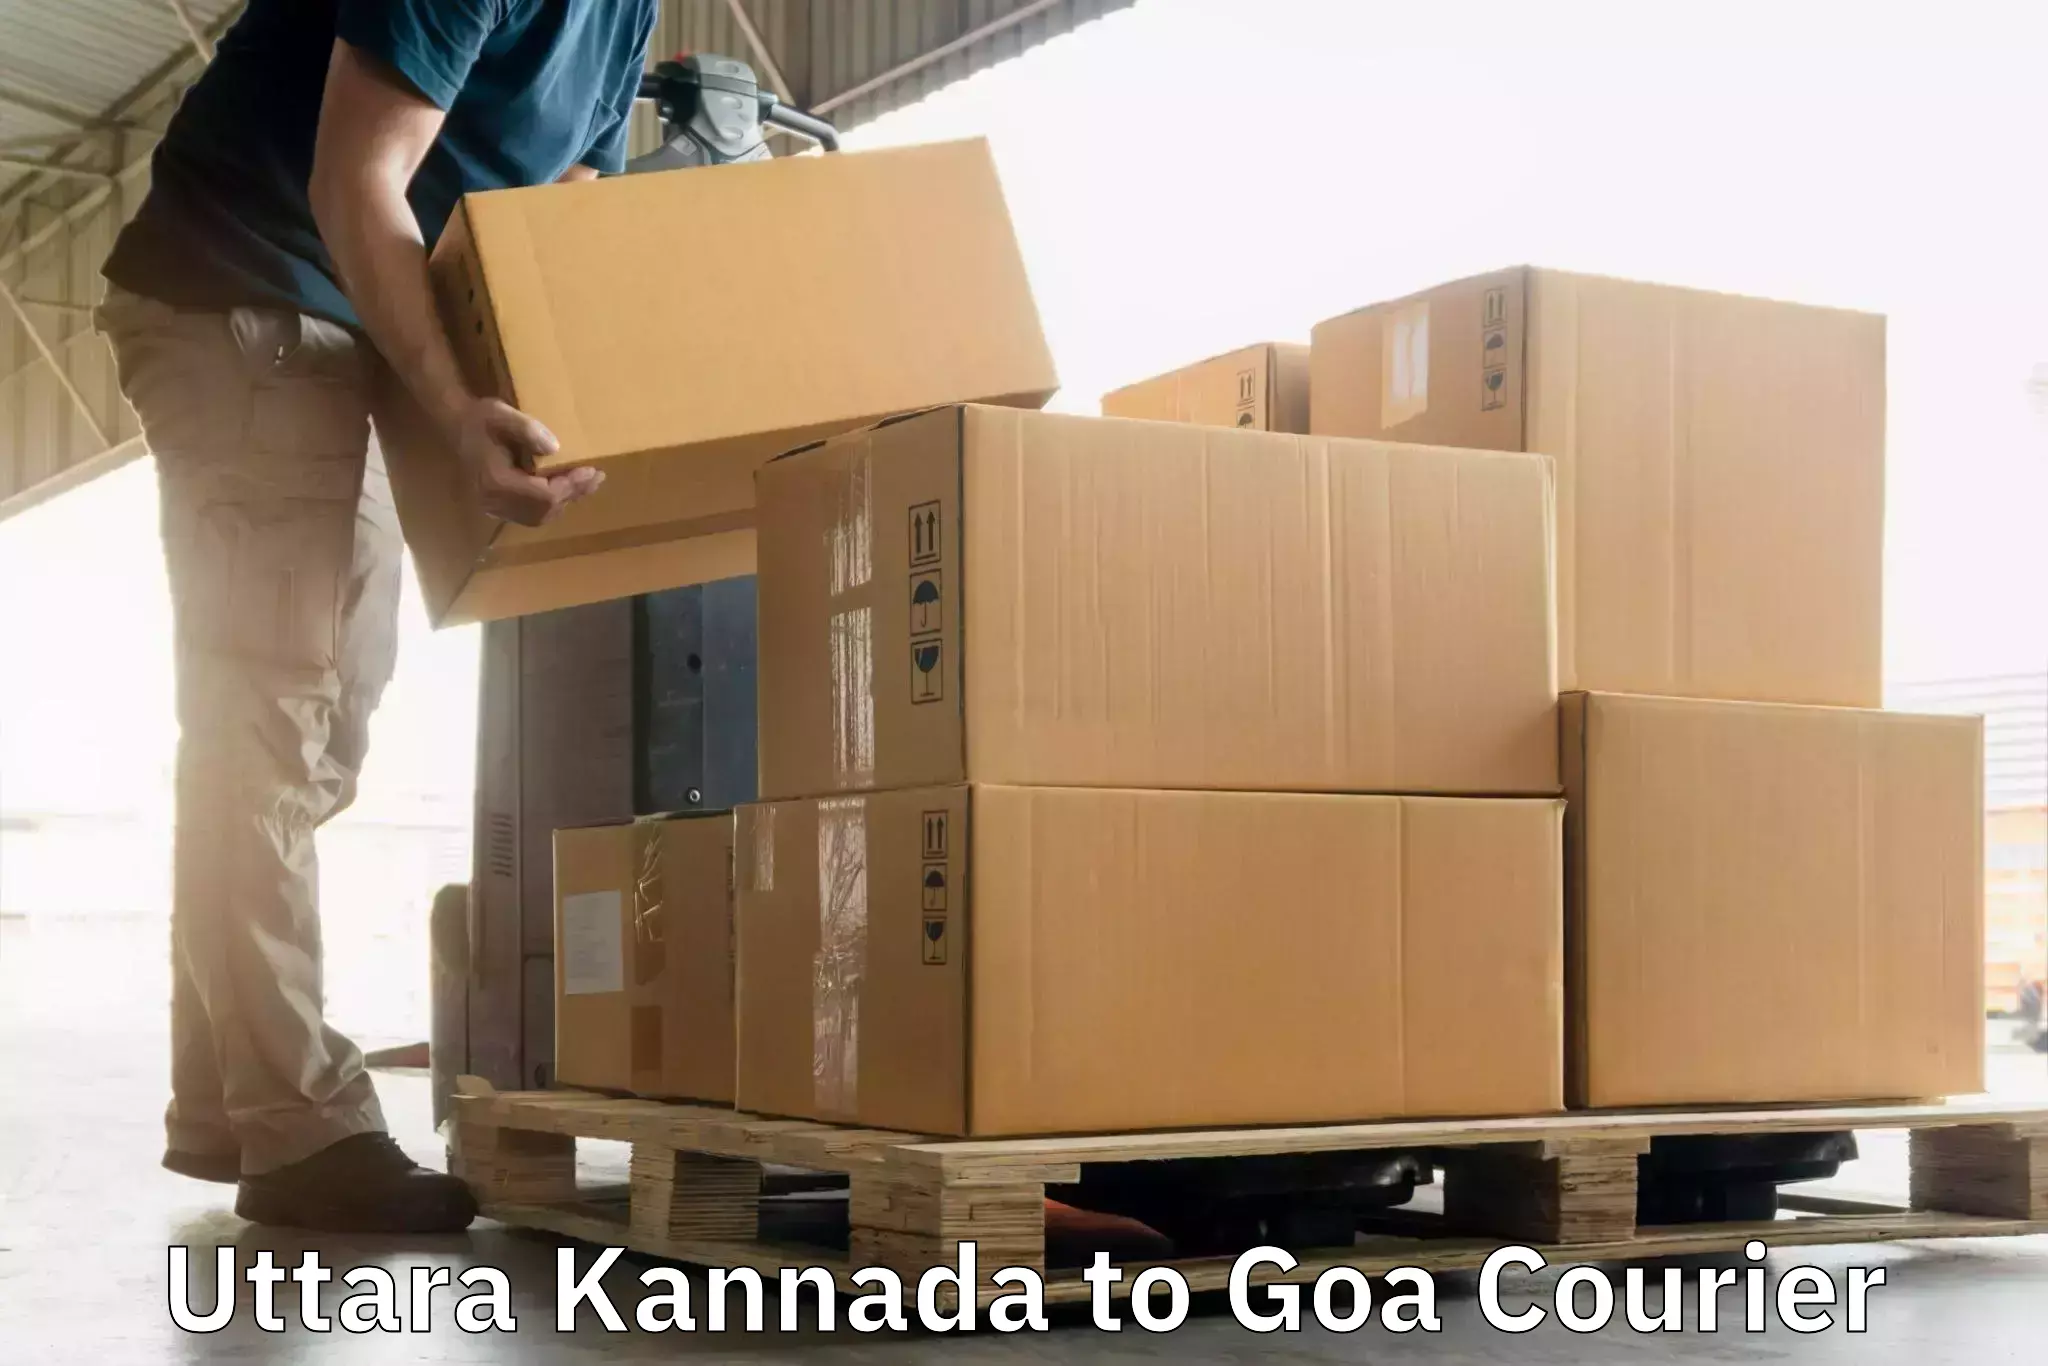 Holiday shipping services Uttara Kannada to South Goa